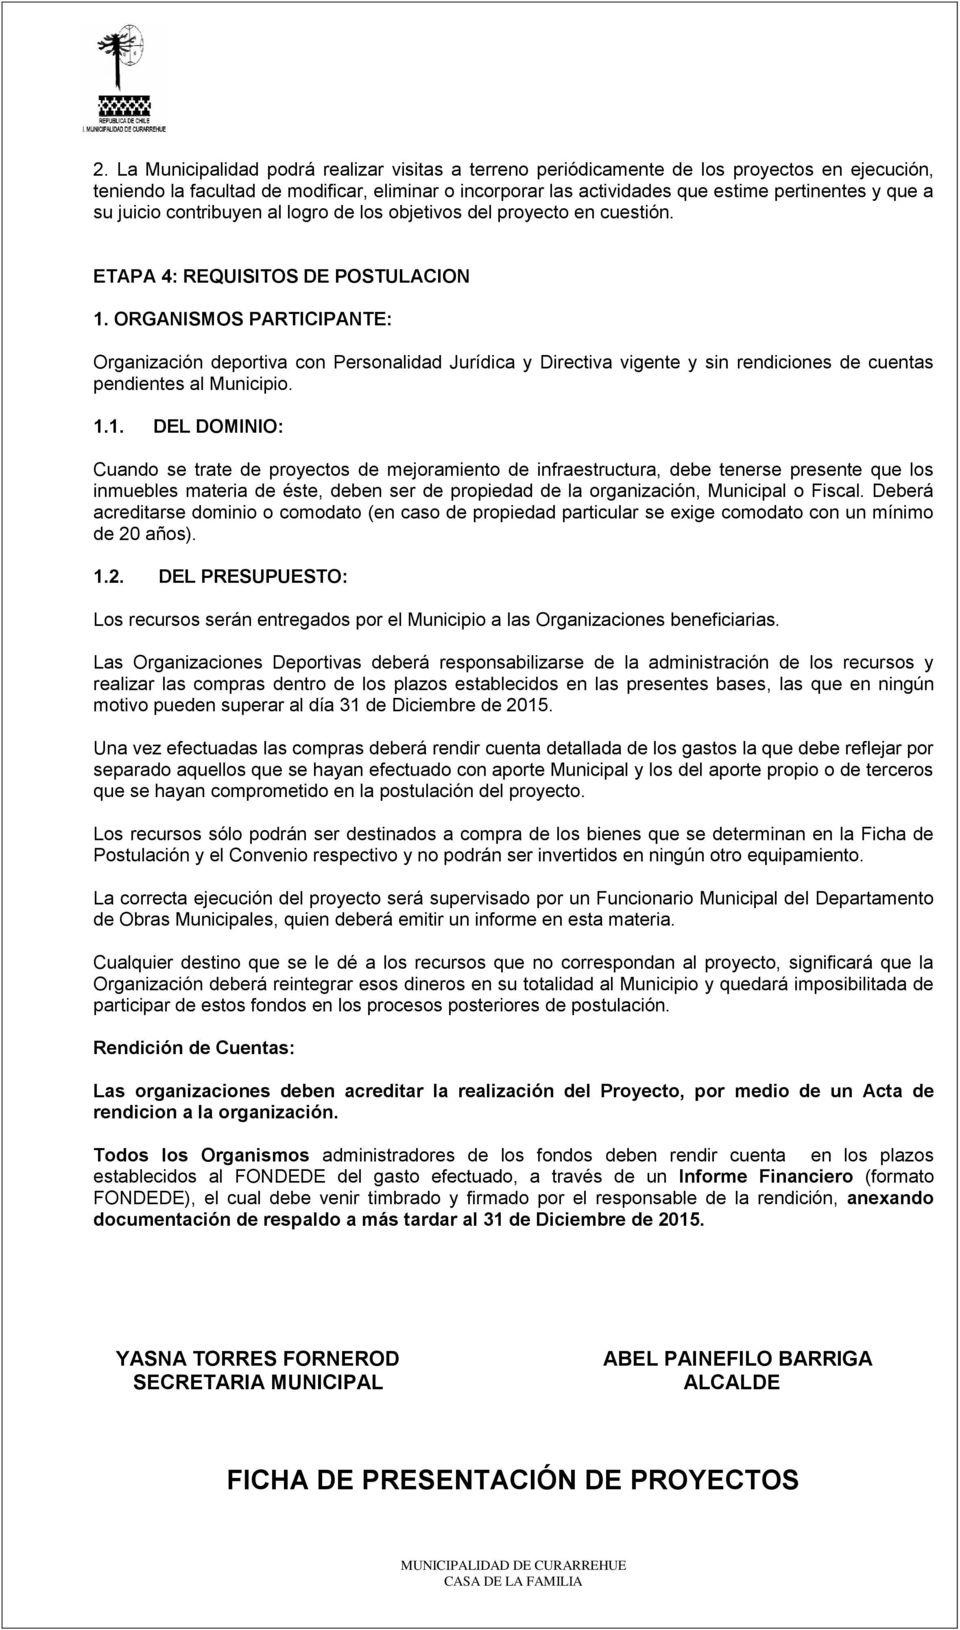 ORGANISMOS PARTICIPANTE: Organización deportiva con Personalidad Jurídica y Directiva vigente y sin rendiciones de cuentas pendientes al Municipio. 1.